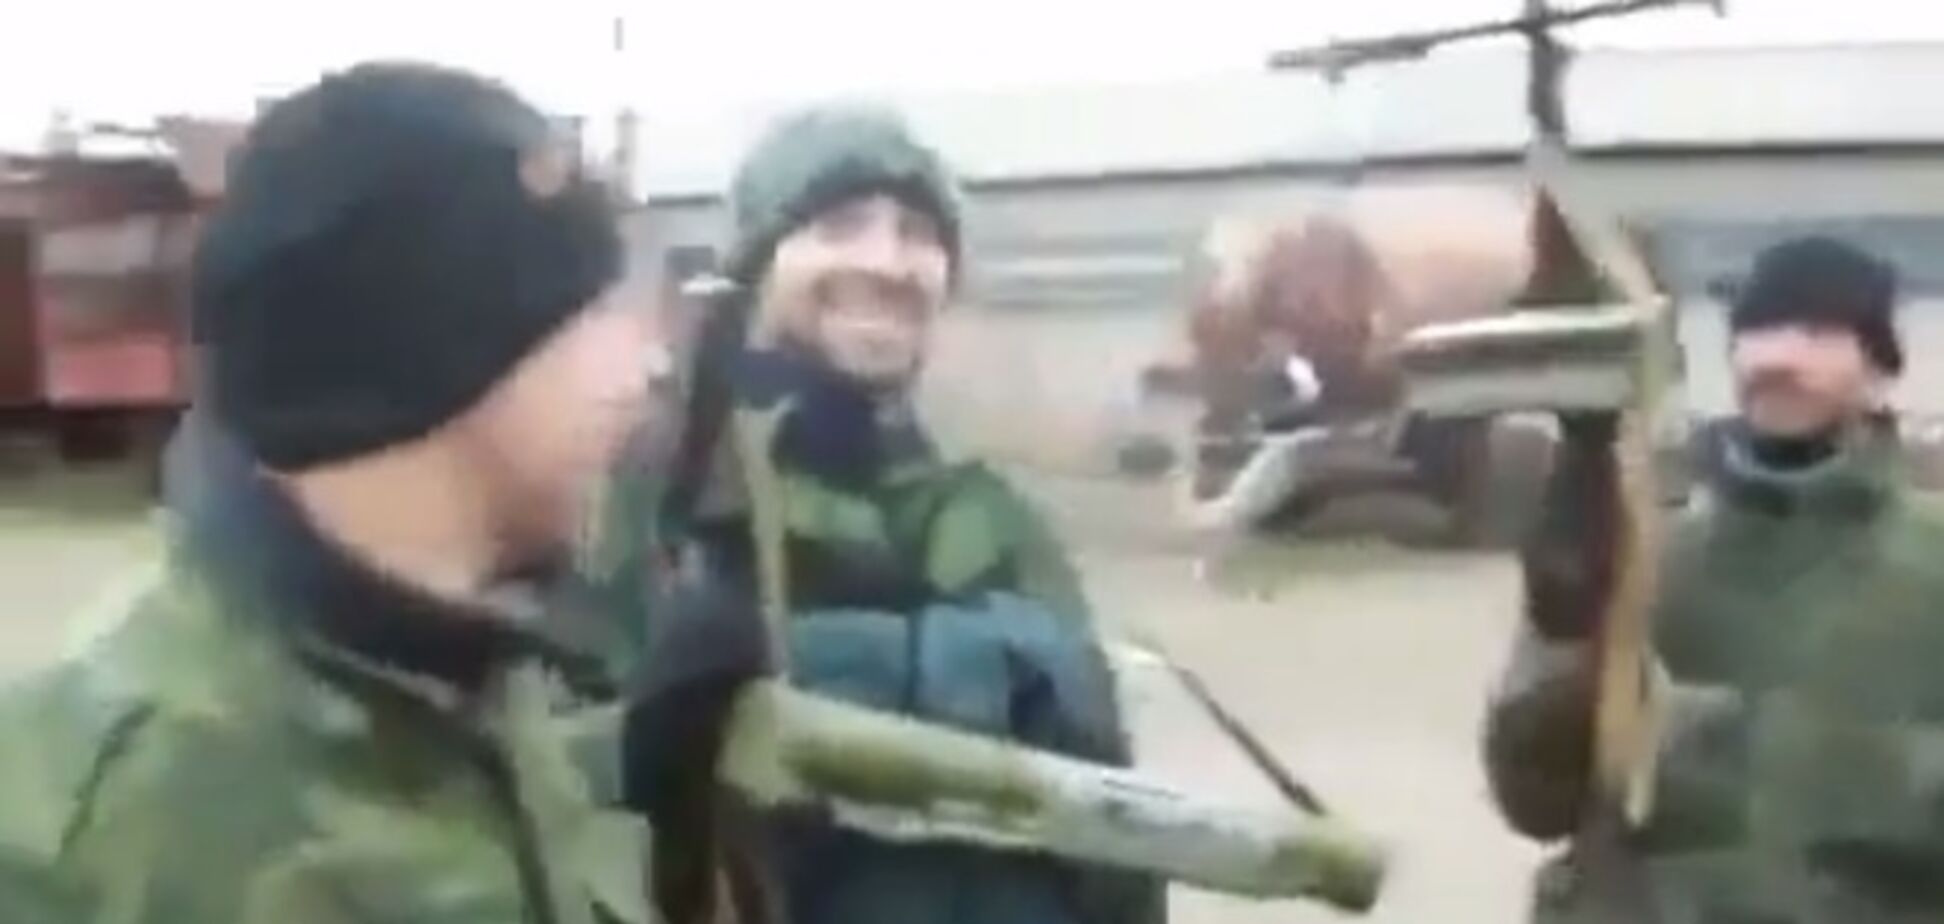 Кавказские боевики на Донбассе признались, что они 'туристы из России': видеофакт